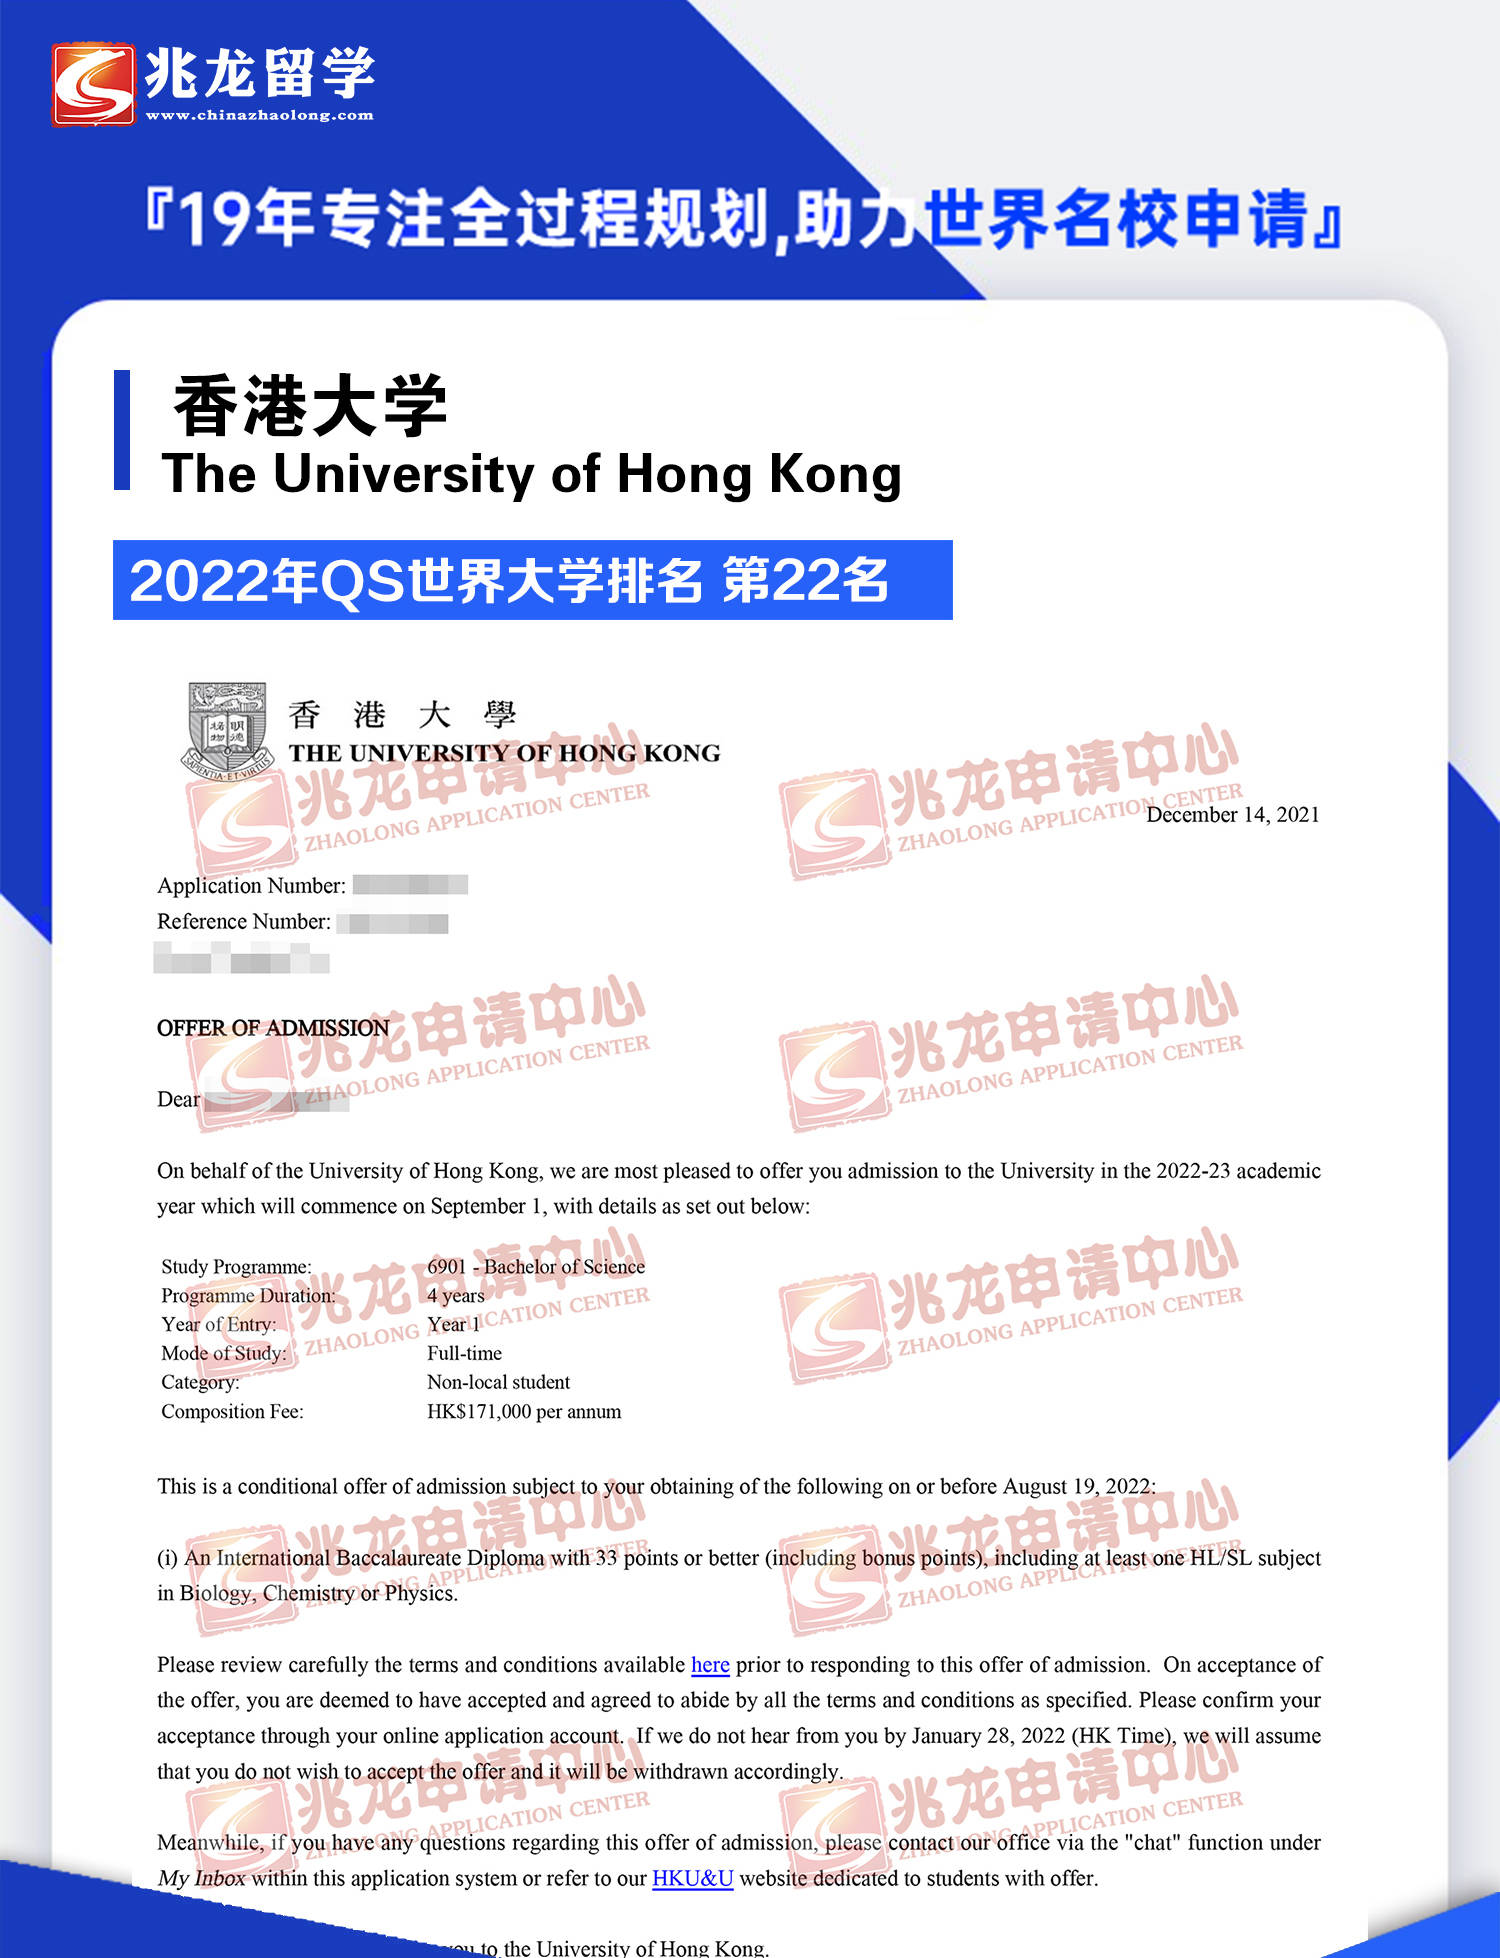 香港中文大学offer图片